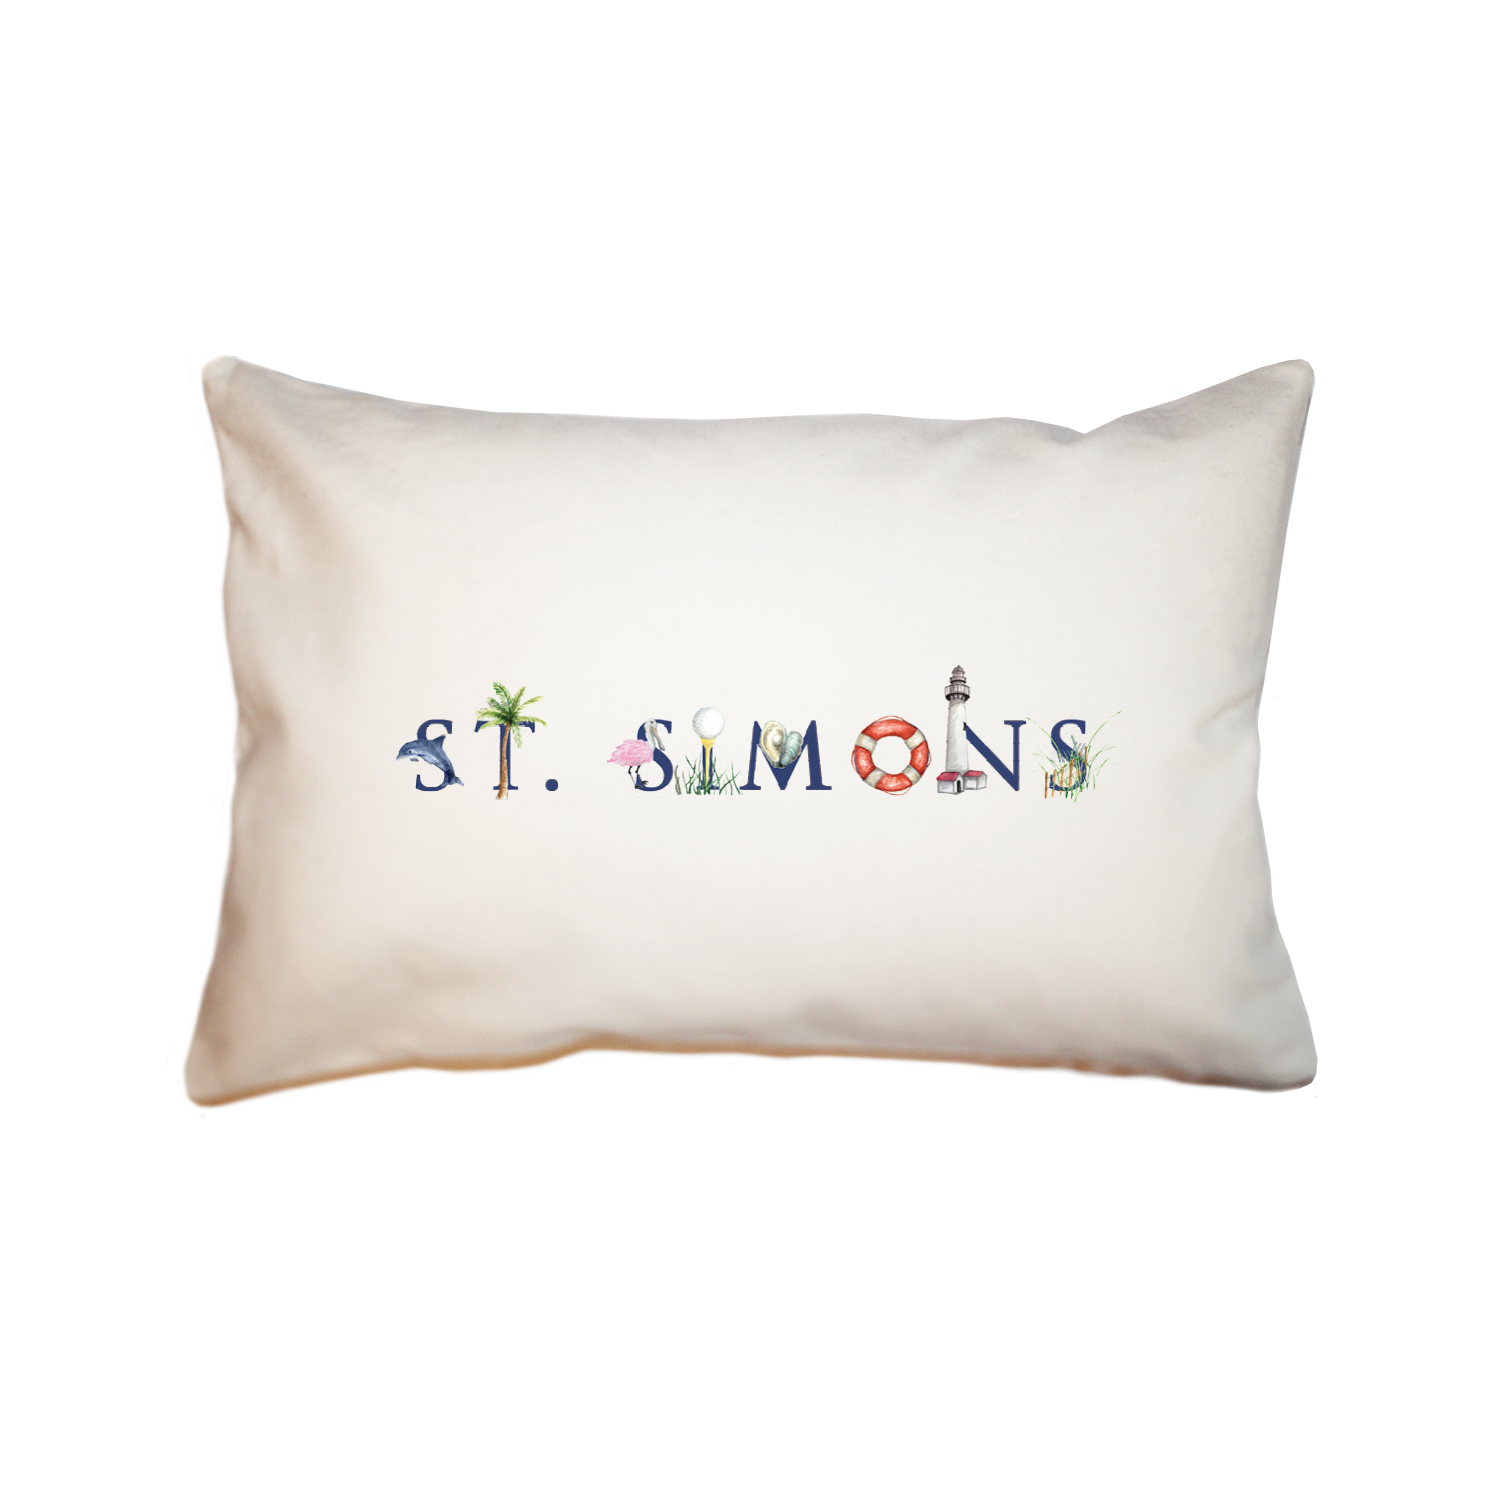 St. Simons large rectangle pillow